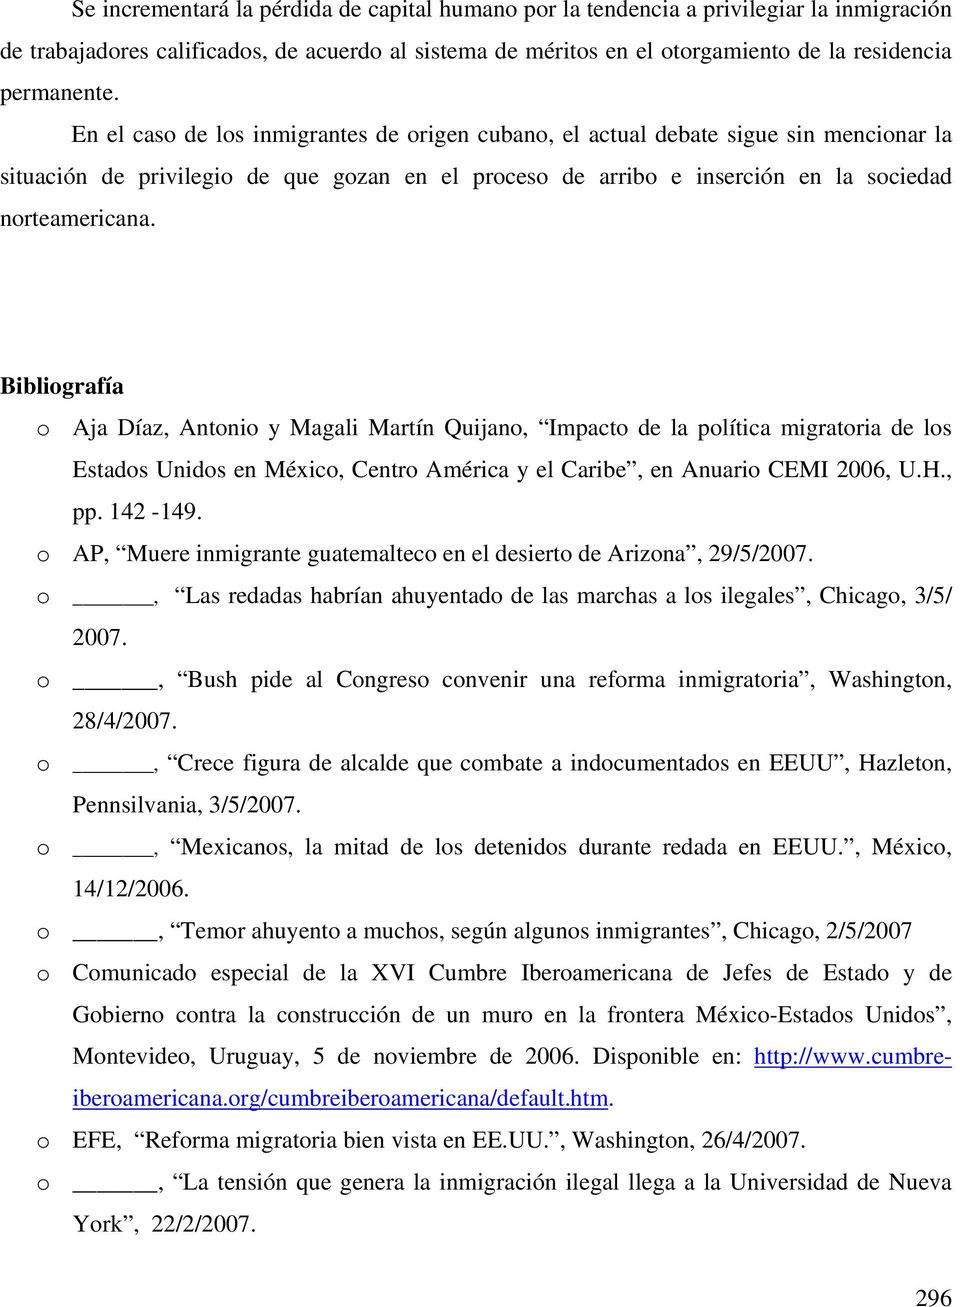 Bibliografía o Aja Díaz, Antonio y Magali Martín Quijano, Impacto de la política migratoria de los Estados Unidos en México, Centro América y el Caribe, en Anuario CEMI 2006, U.H., pp. 142-149.